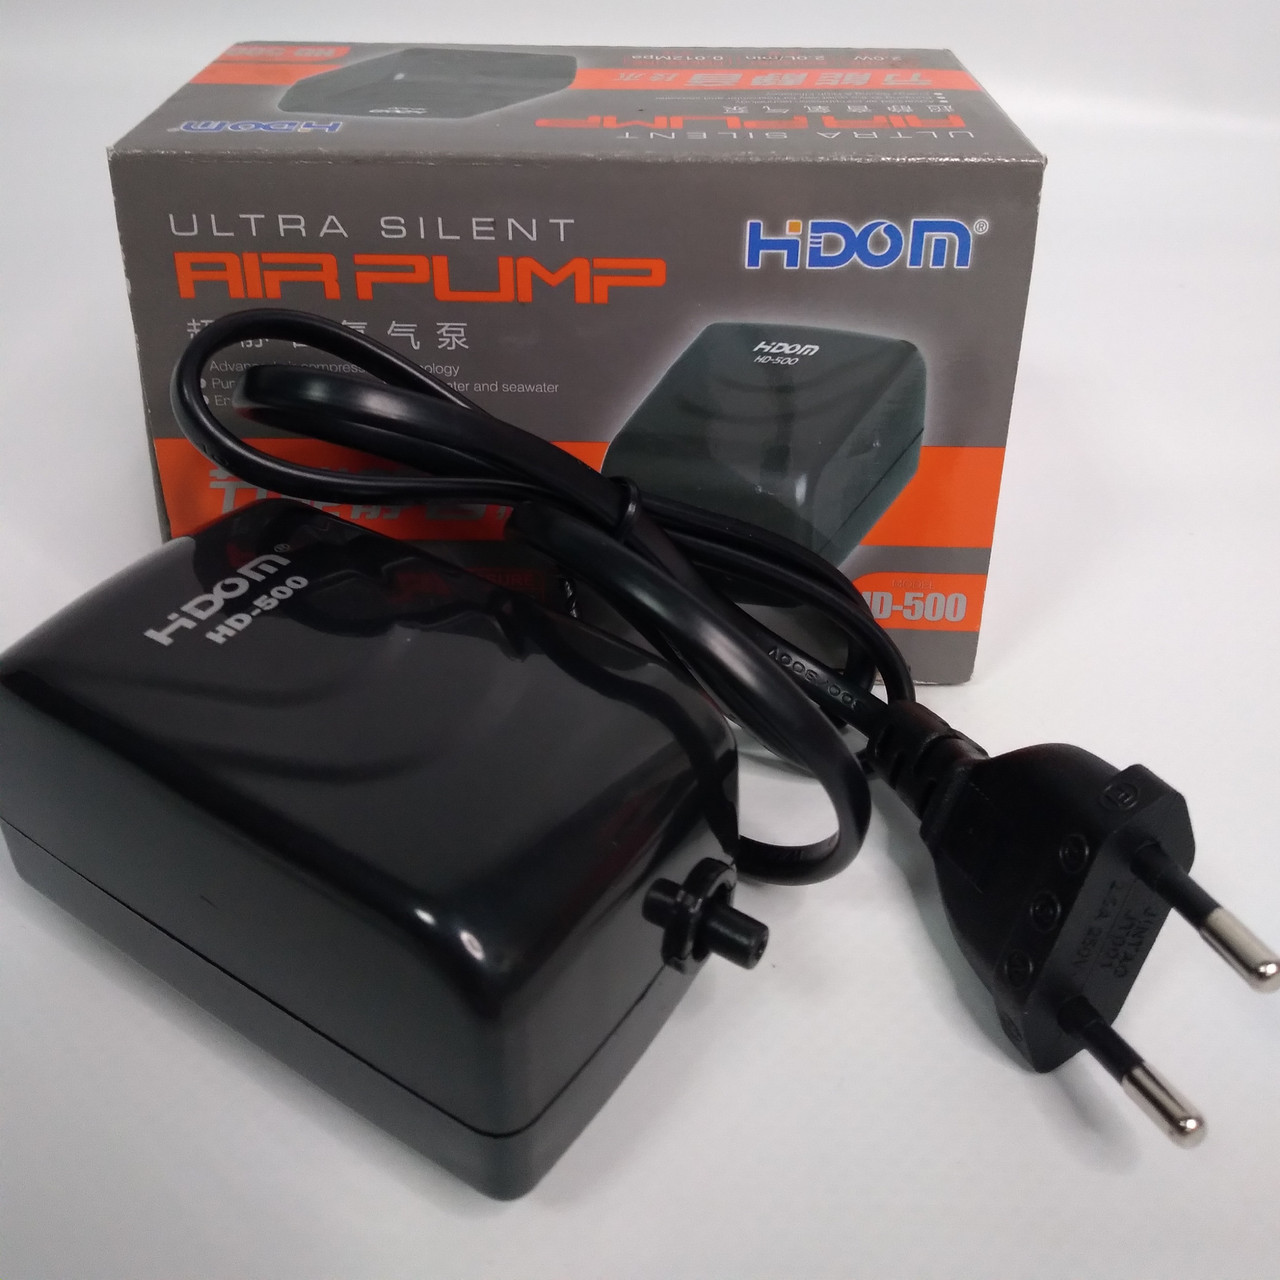  Hidom HD-500   50 